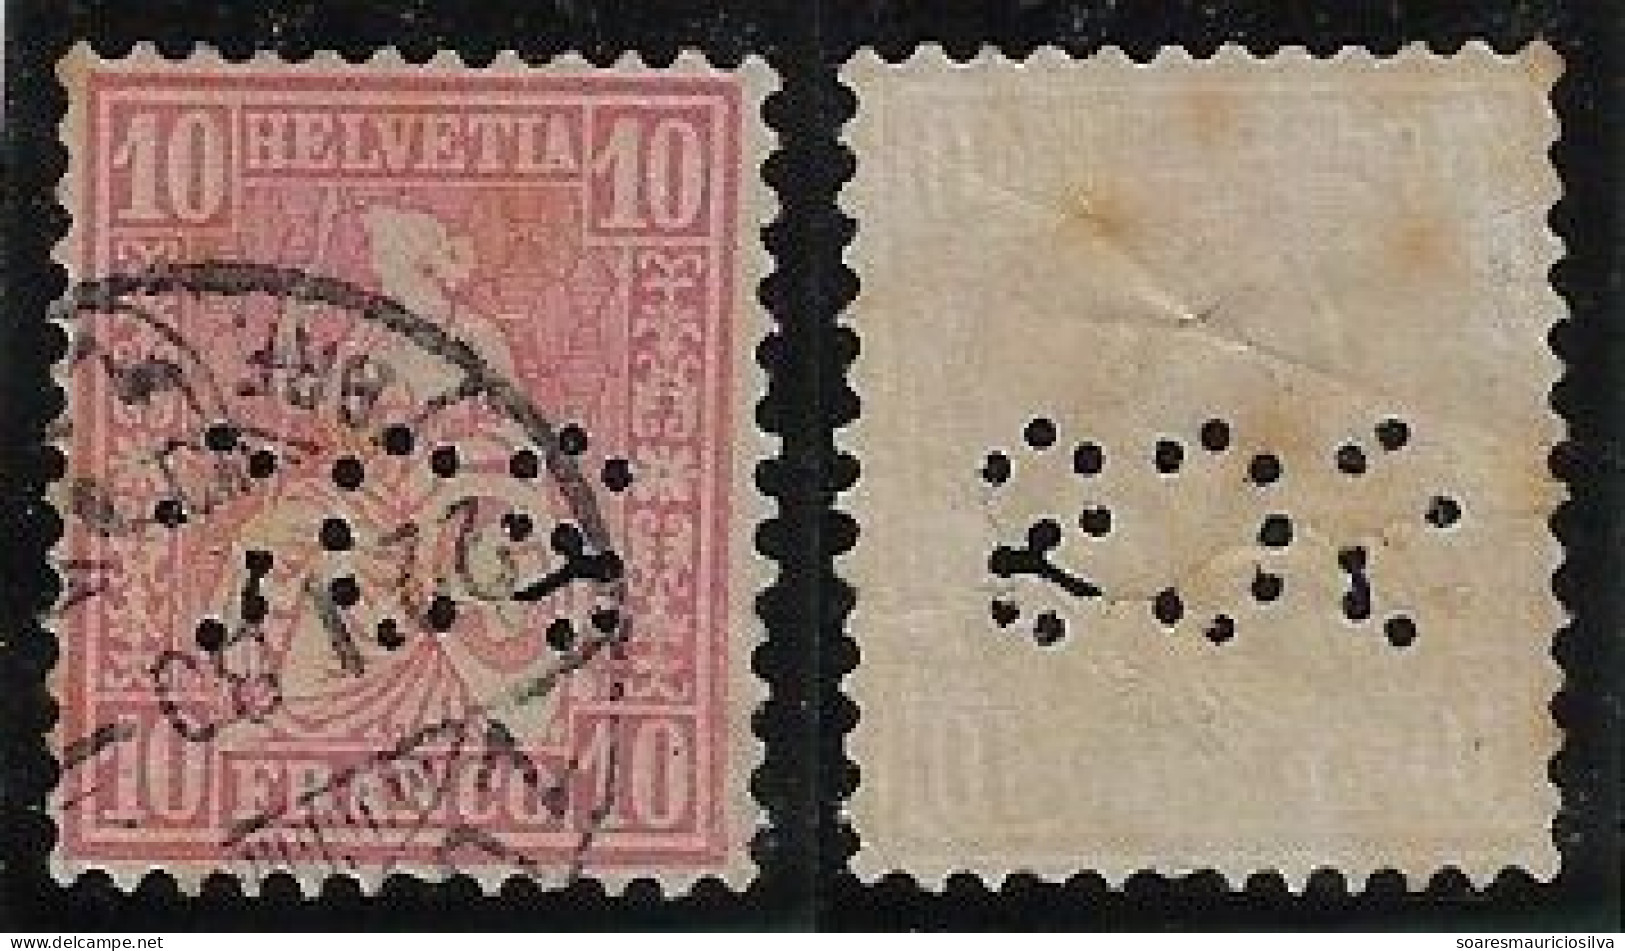 Switzerland 1874/1893 Stamp Perfin SCS By Société Crédit Suisse Swiss Credit Company From Zuriche Lochung Perfore - Gezähnt (perforiert)